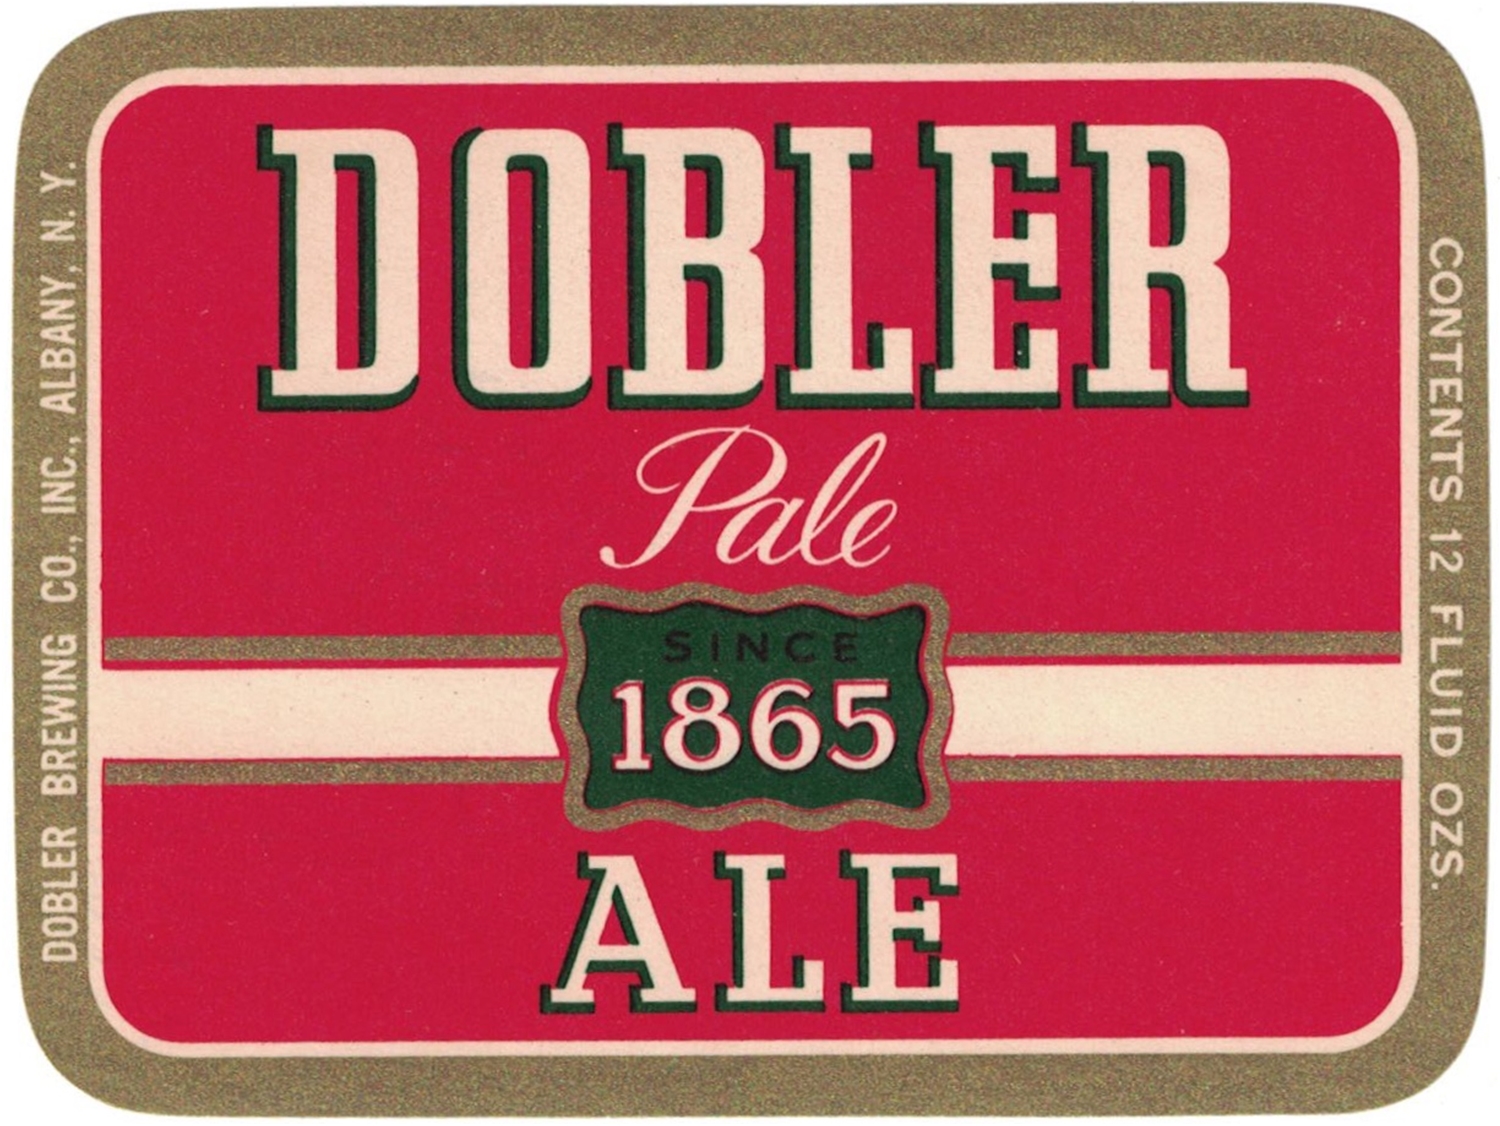 Dobler 1865 Pale Ale Beer Label